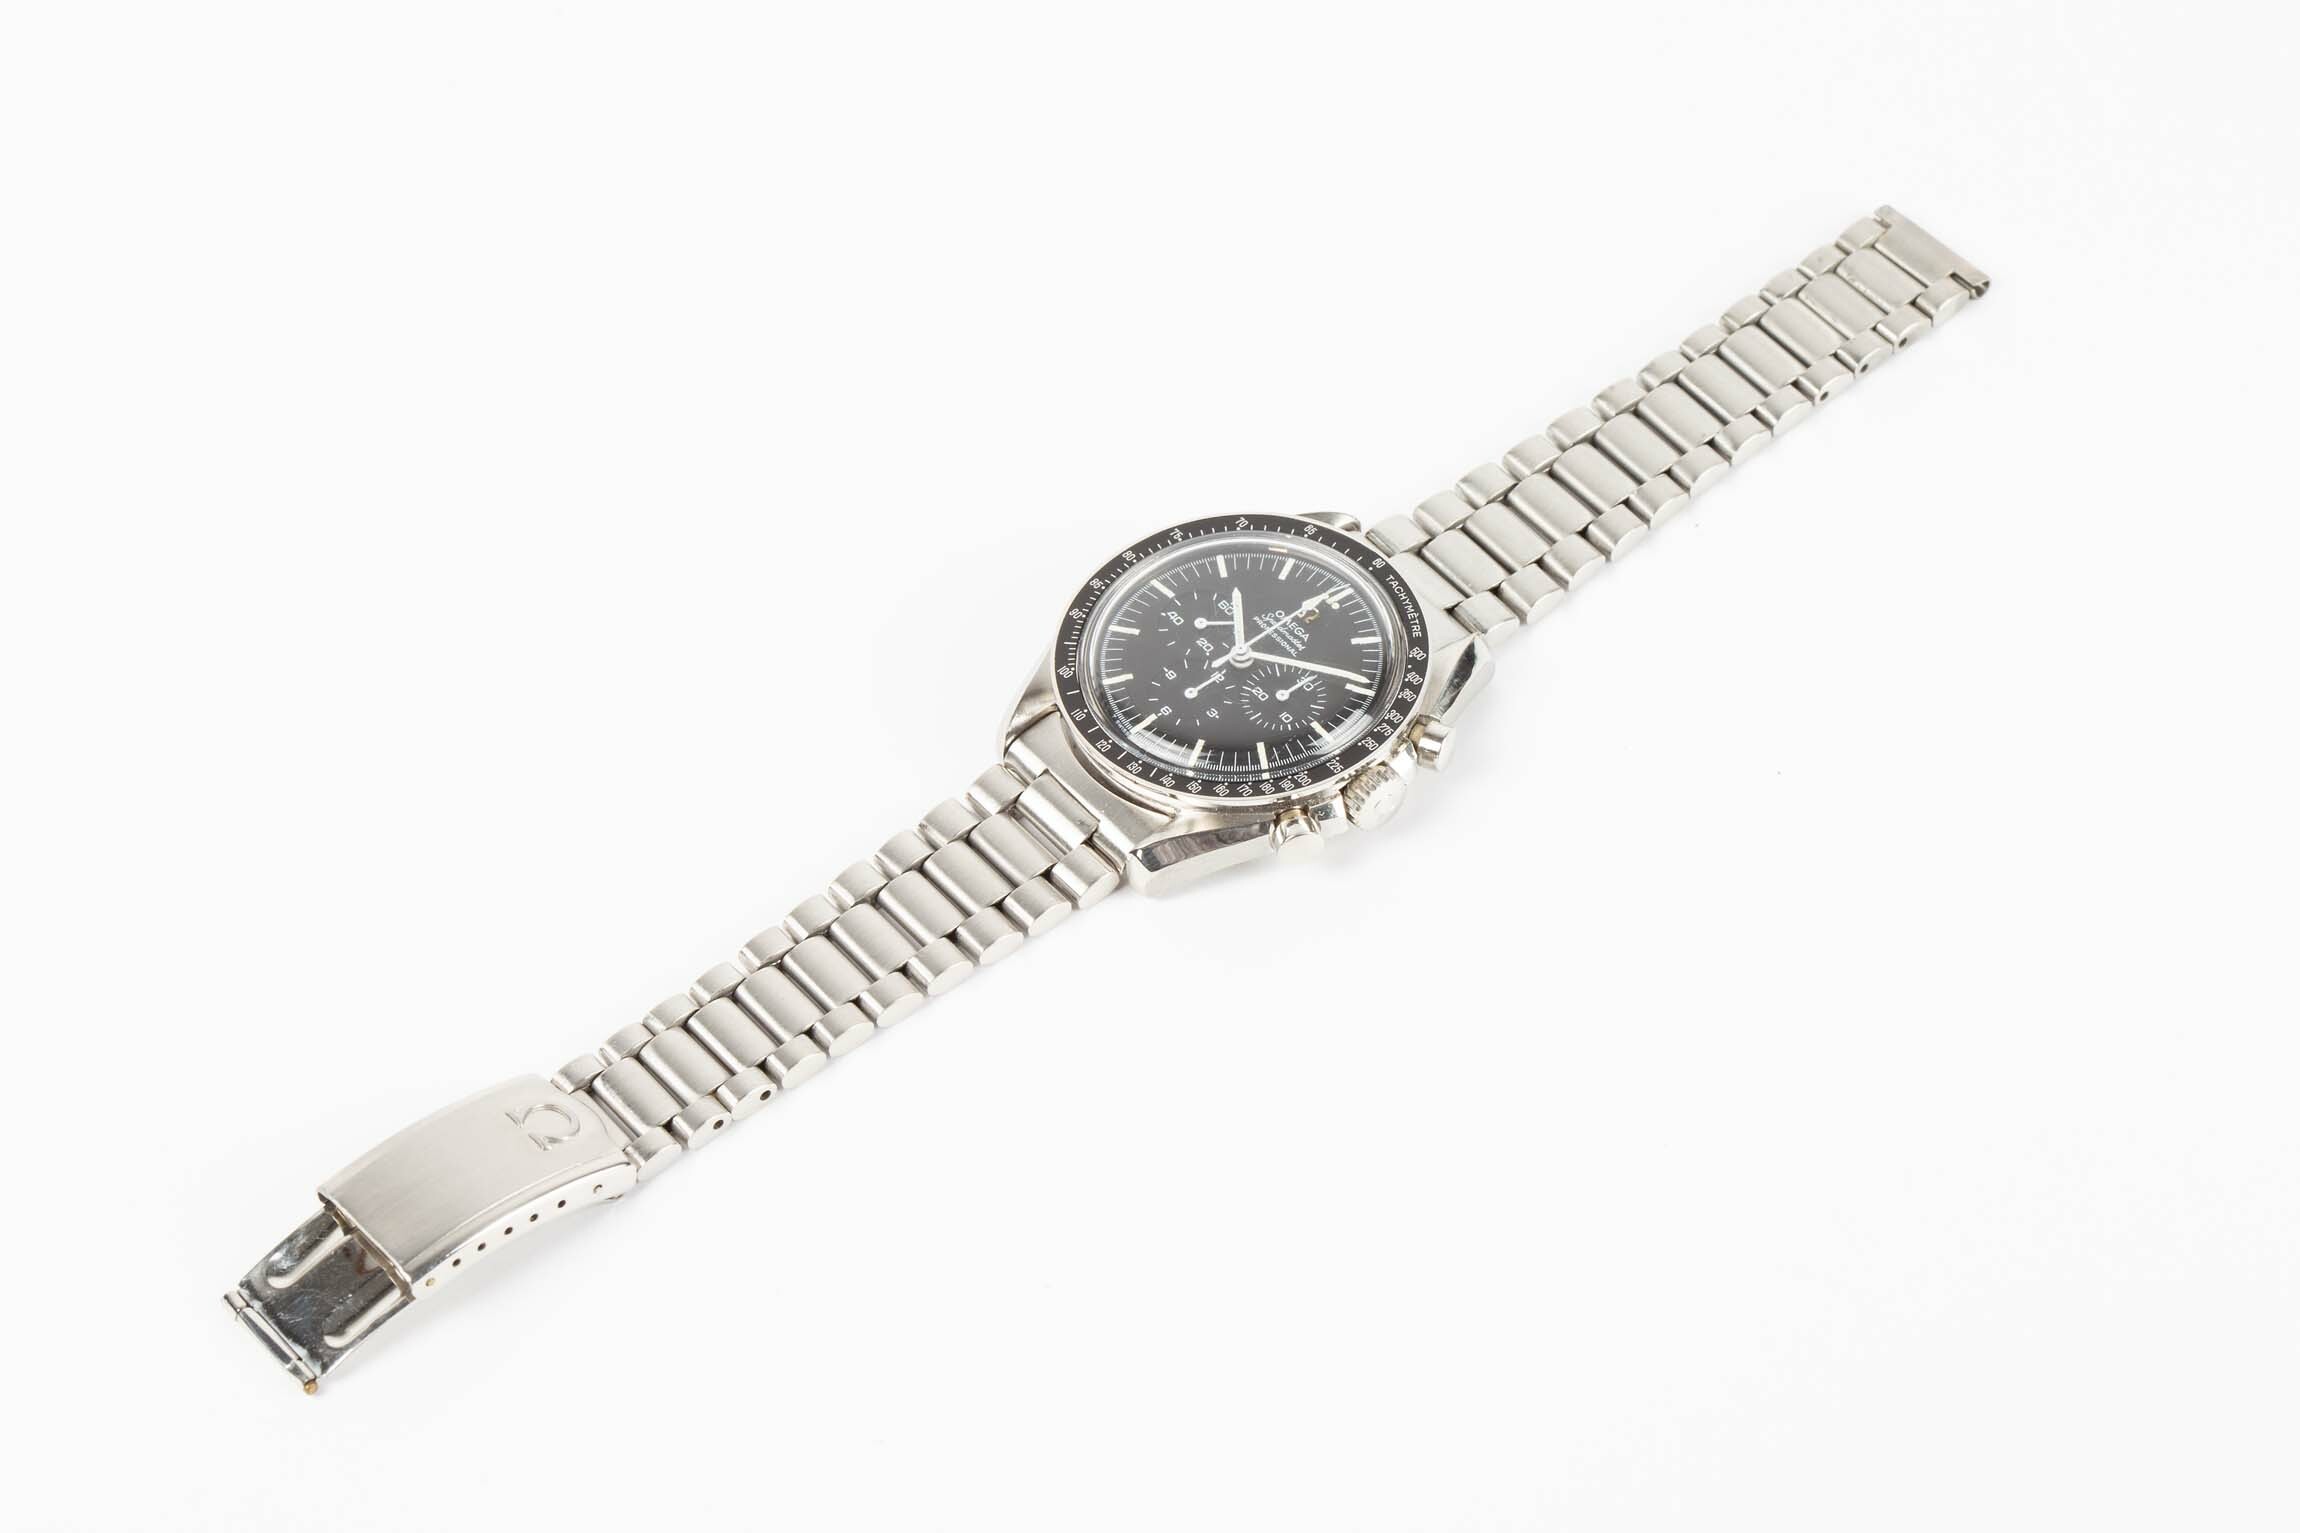 Armbanduhr, Omega, Biel (CH), 1967 (Deutsches Uhrenmuseum CC BY-SA)